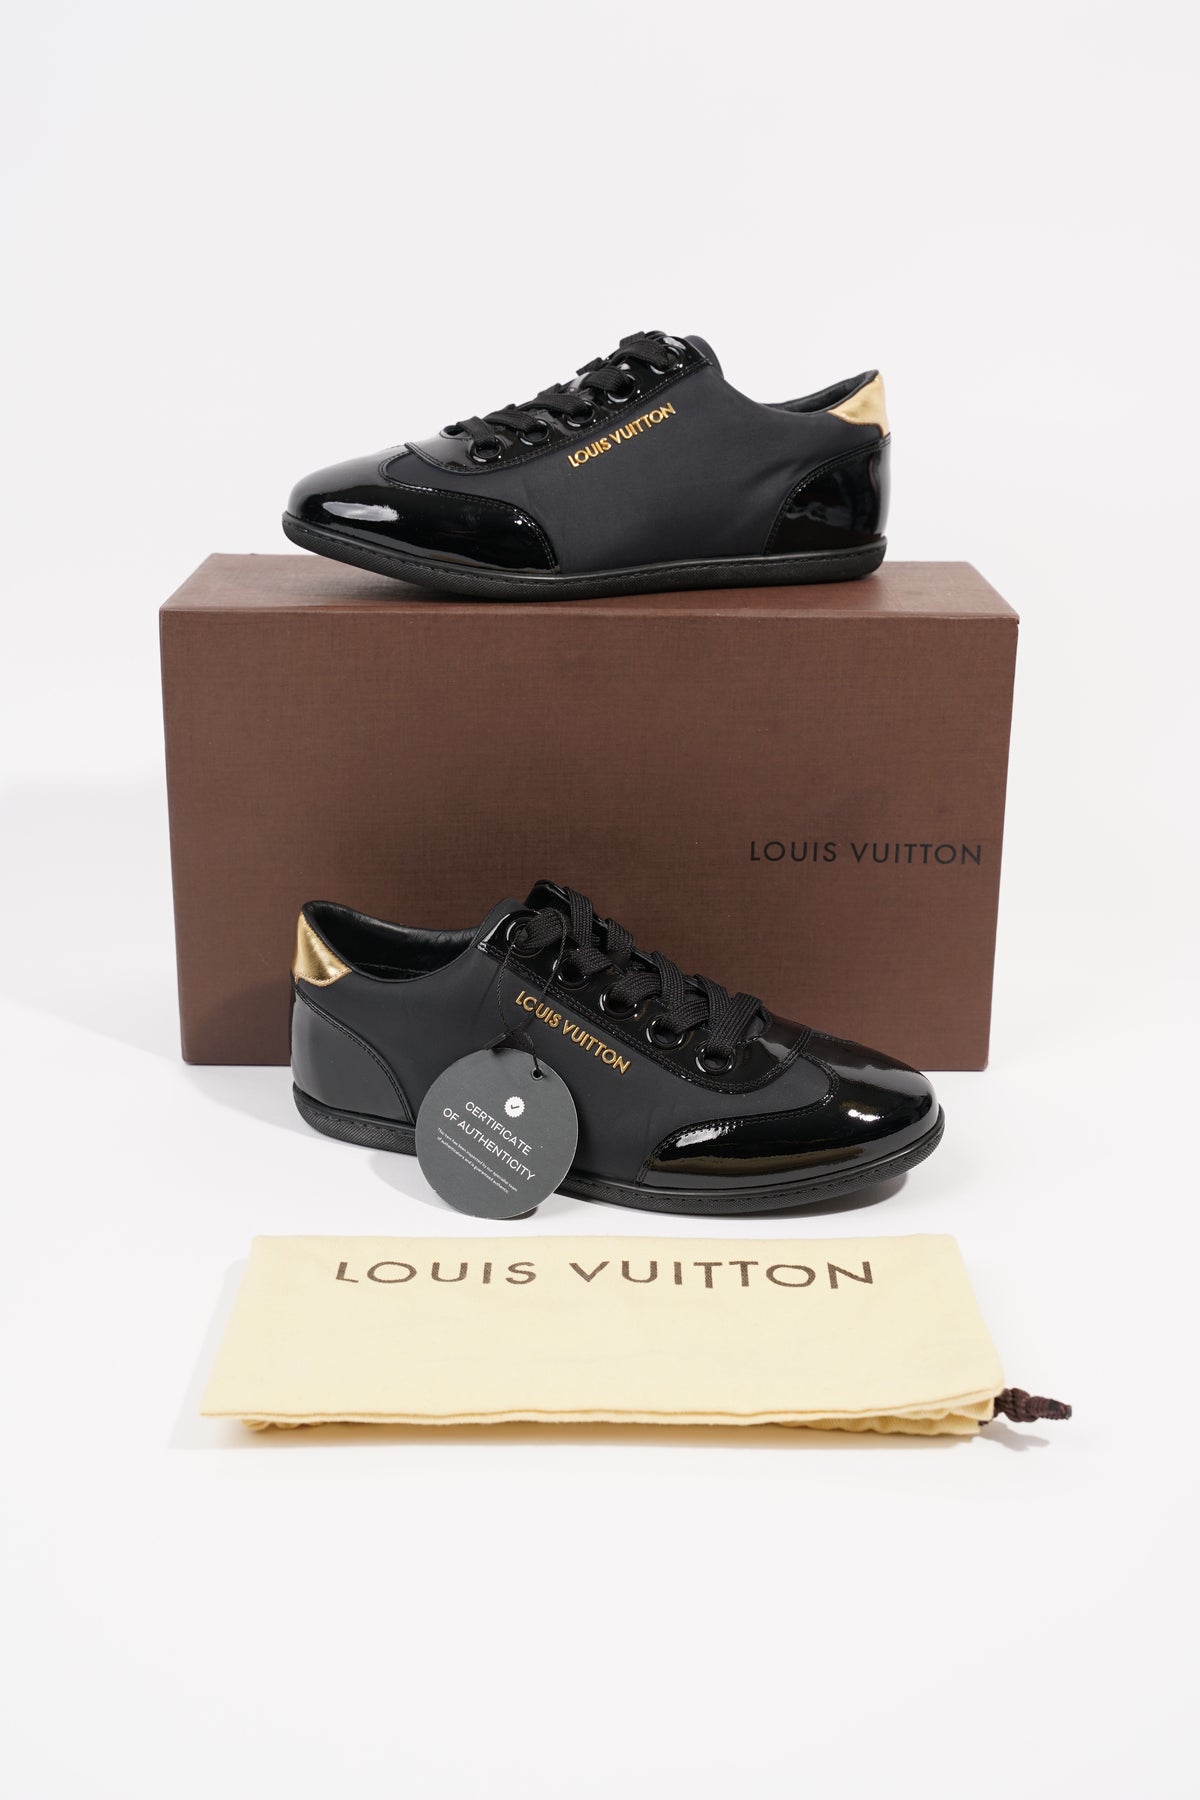 Louis Vuitton Womens Low Top Sneaker Black / Gold EU 36 / UK 3